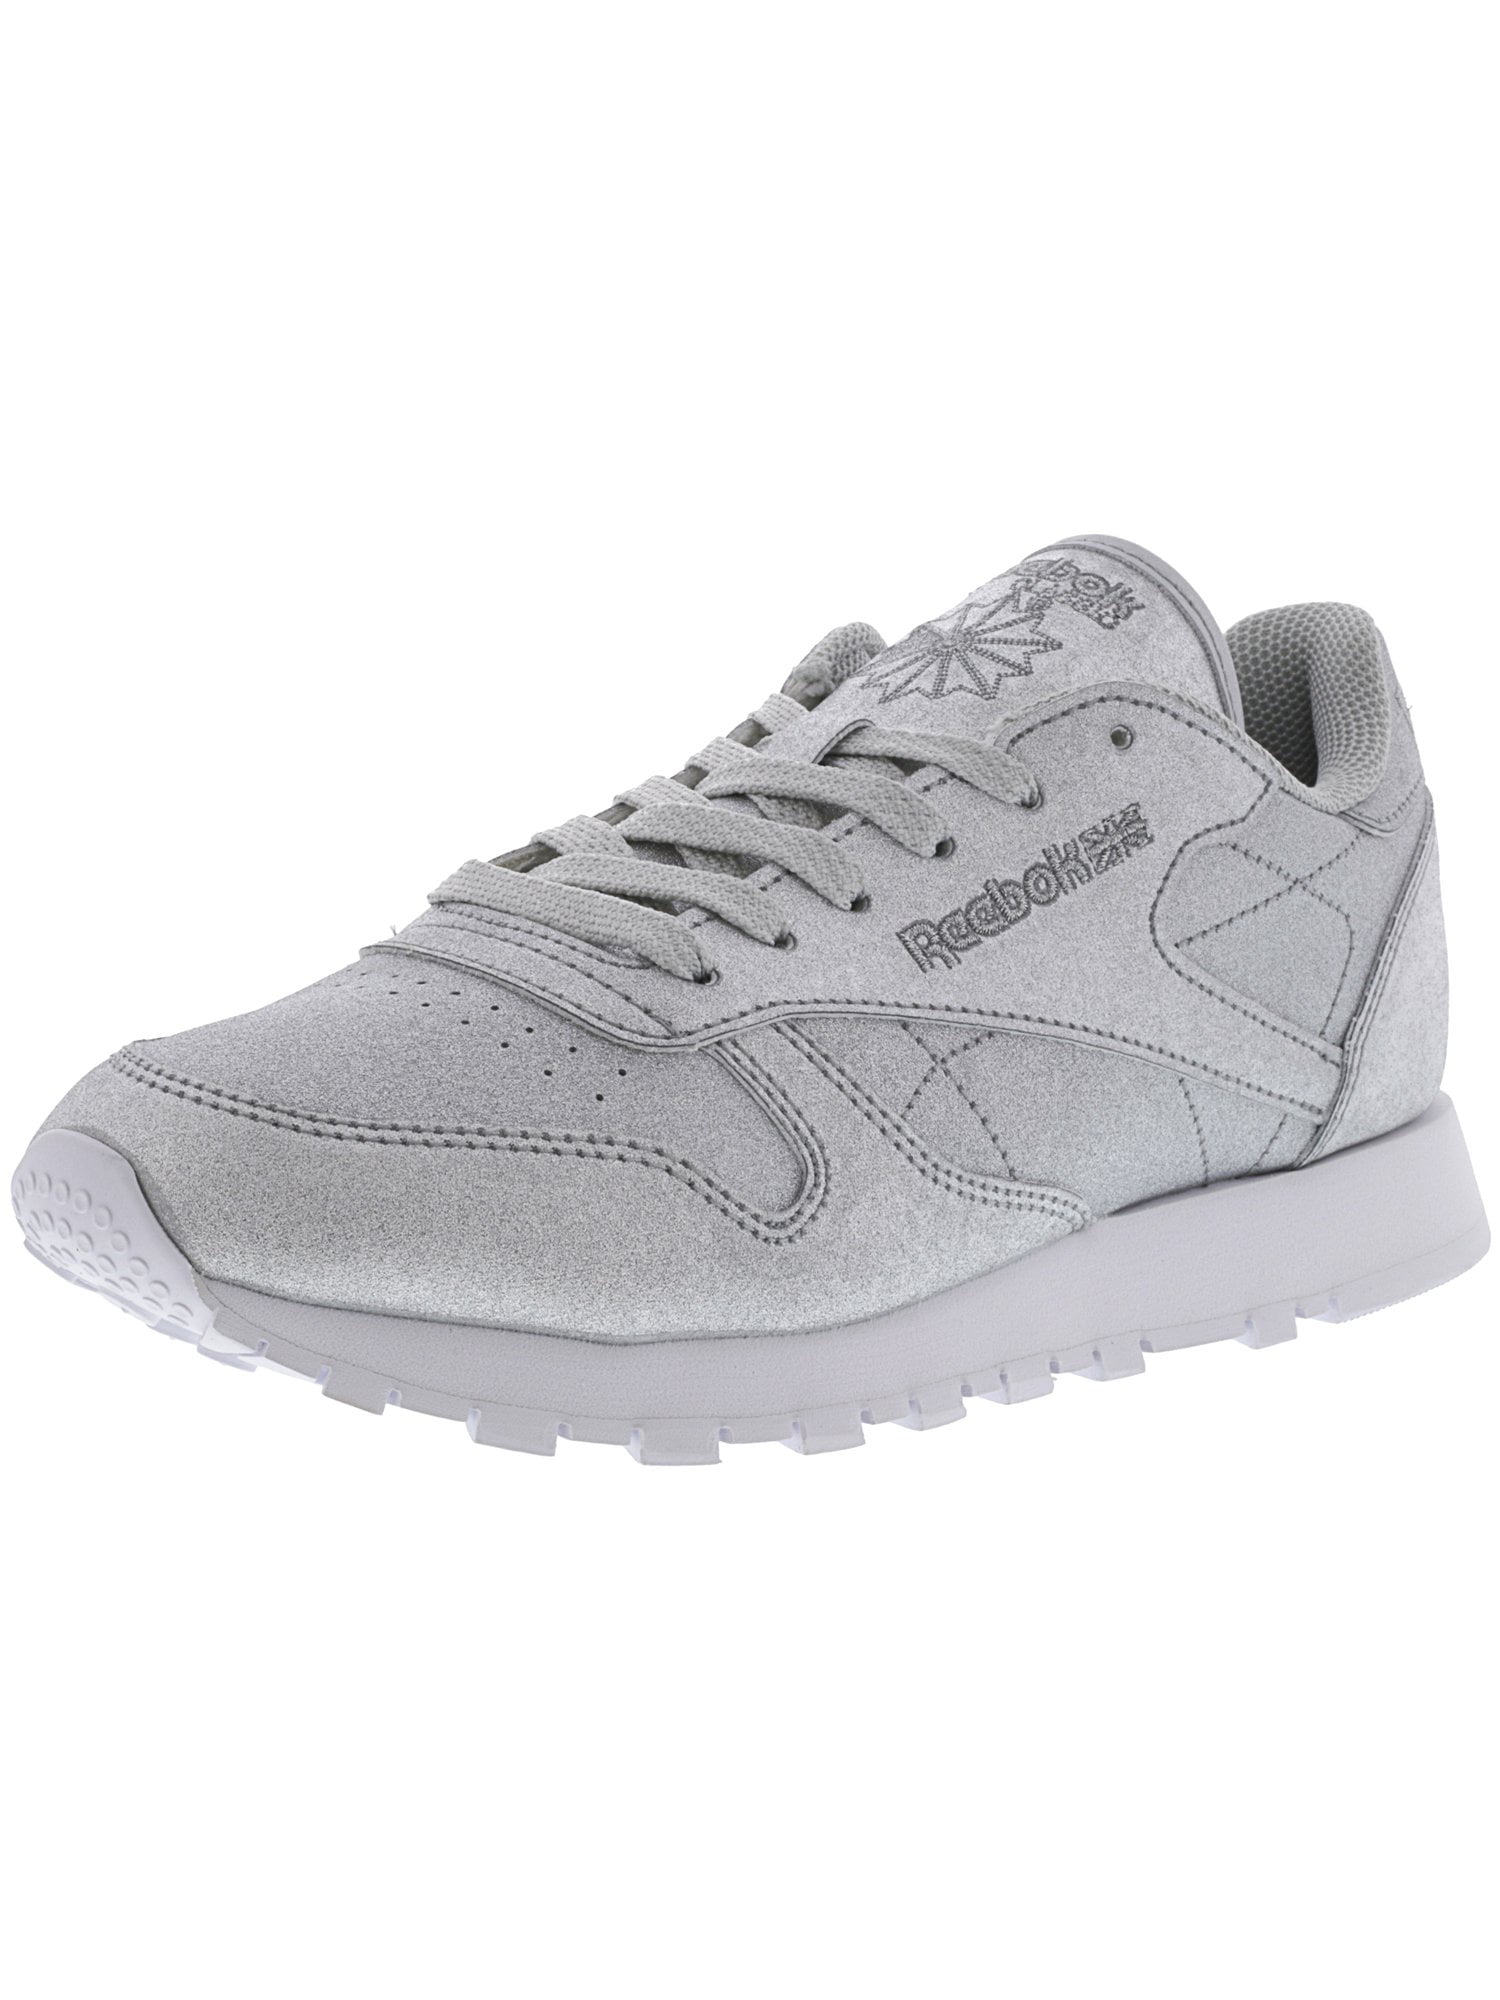 grey reebok sneakers